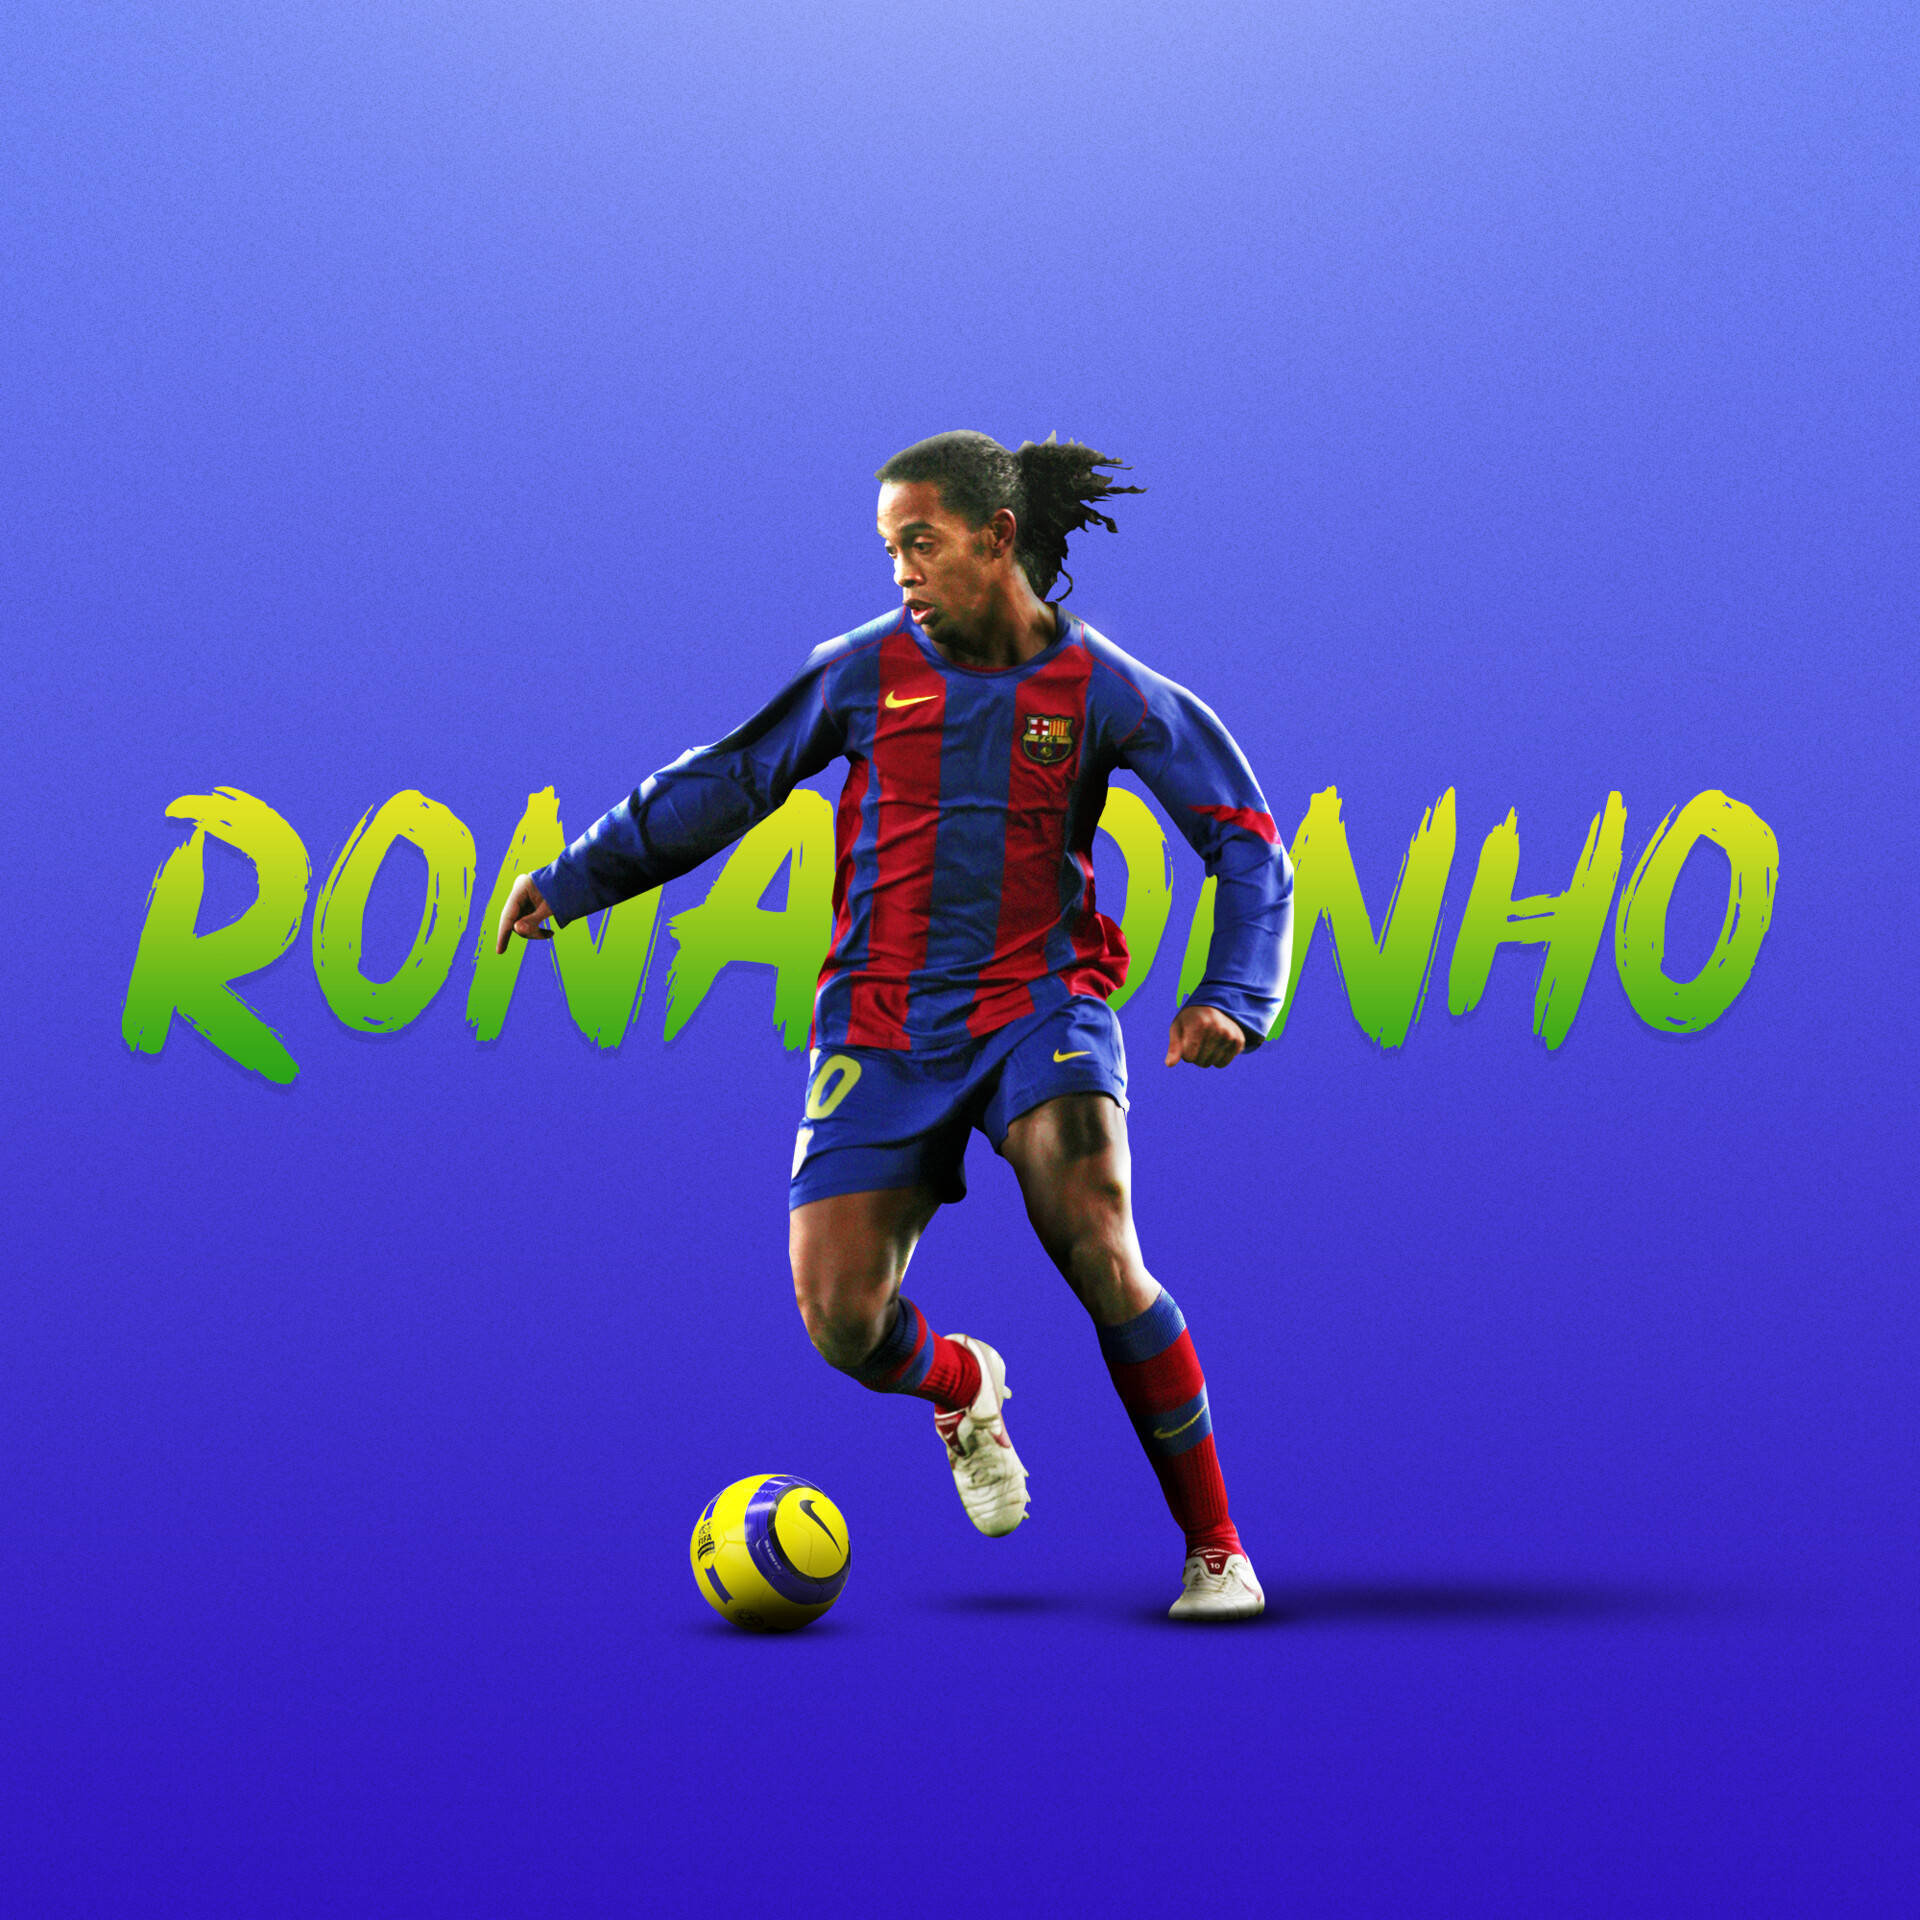 Football Athlete Ronaldinho Background